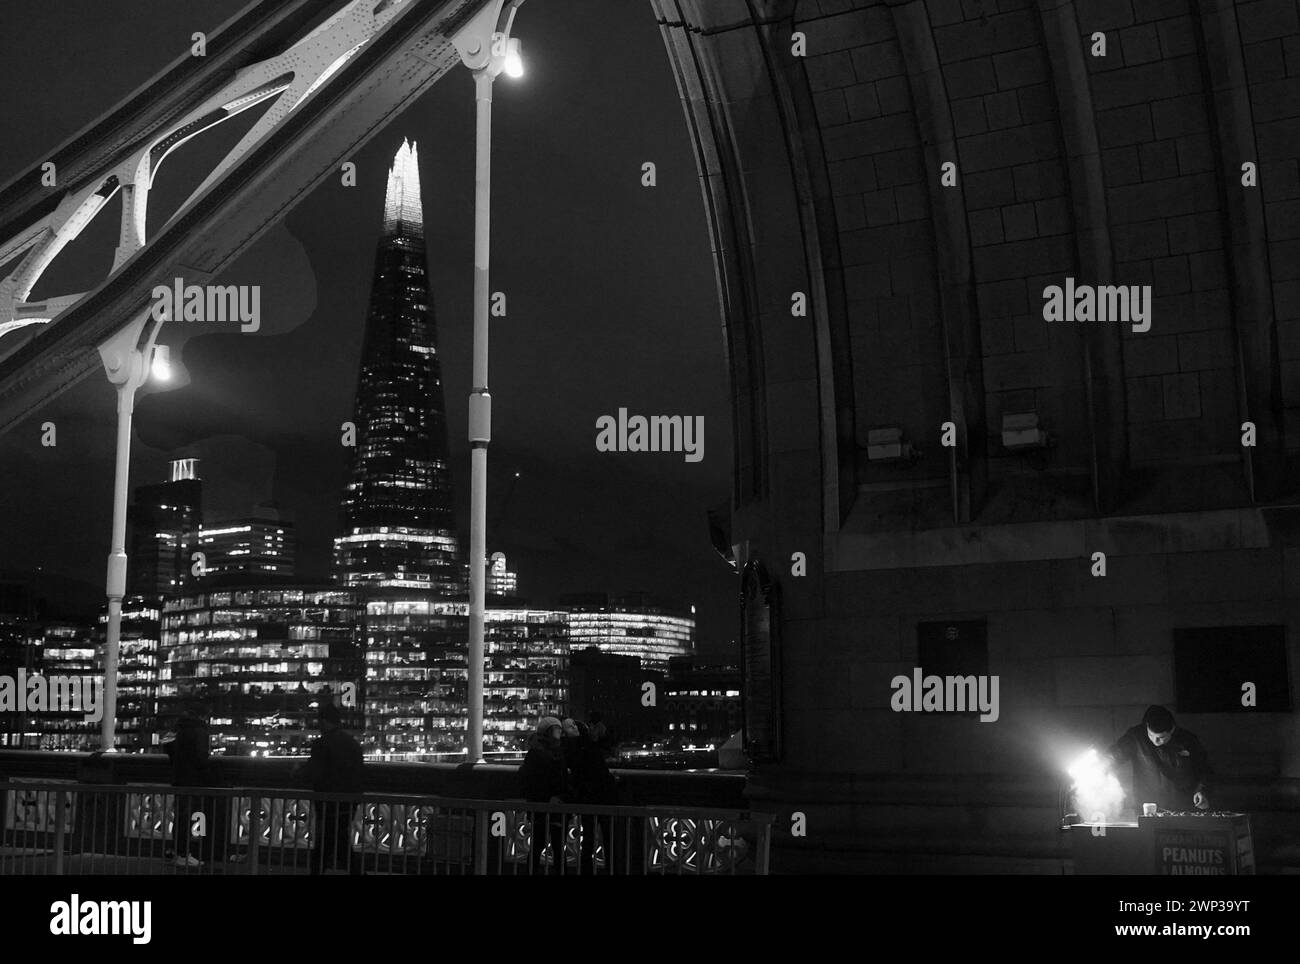 Urbain nocturne. Lumière , ombre et mouvement sur le pont. Londres Royaume-Uni 2019 Banque D'Images